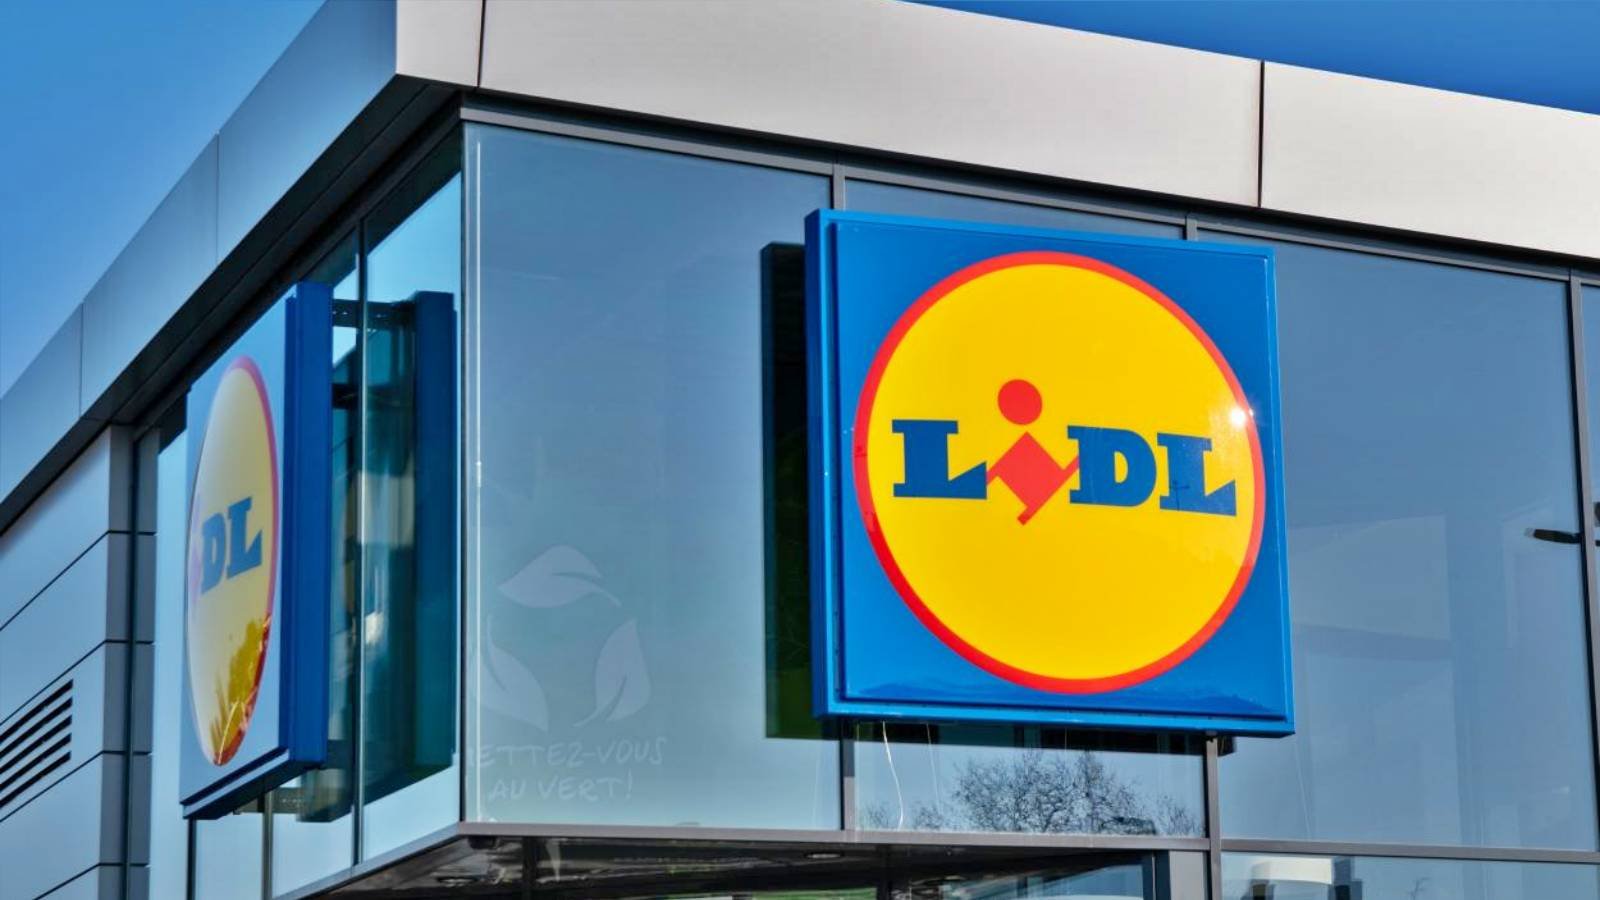  Cinci supermarketuri Lidl din Iași, închise din cauza neregulilor (VIDEO-FOTO)